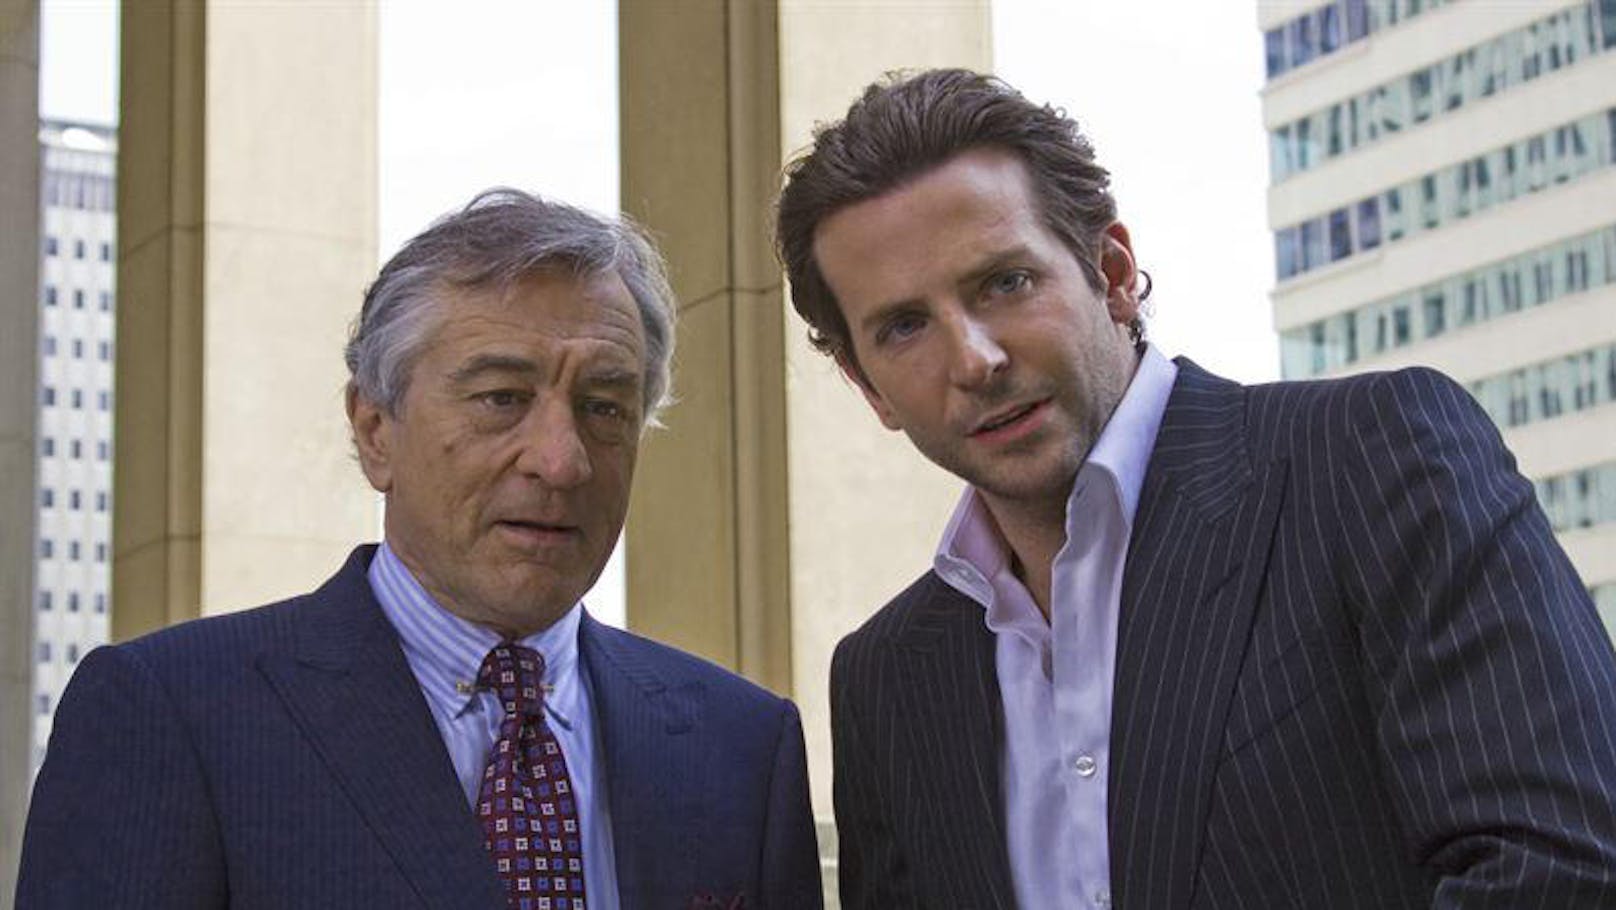 Auch der Geschäftsmann Carl Van Loon (Robert De Niro) findet Gefallen am "neuen" Eddie (Bradley Cooper).